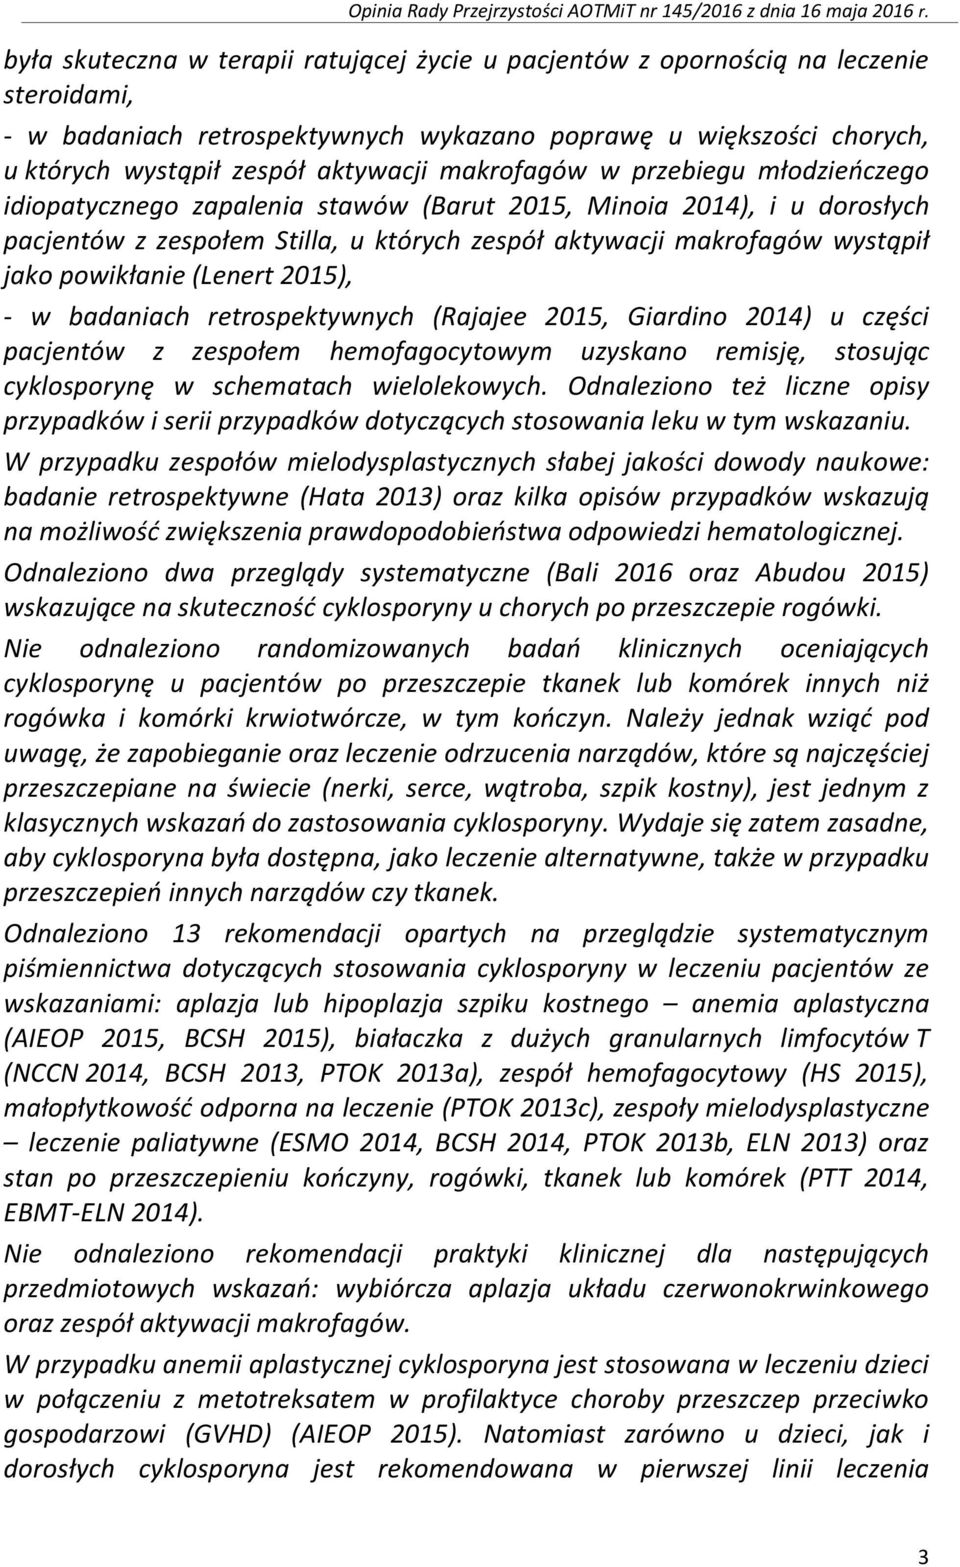 powikłanie (Lenert 2015), - w badaniach retrospektywnych (Rajajee 2015, Giardino 2014) u części pacjentów z zespołem hemofagocytowym uzyskano remisję, stosując cyklosporynę w schematach wielolekowych.